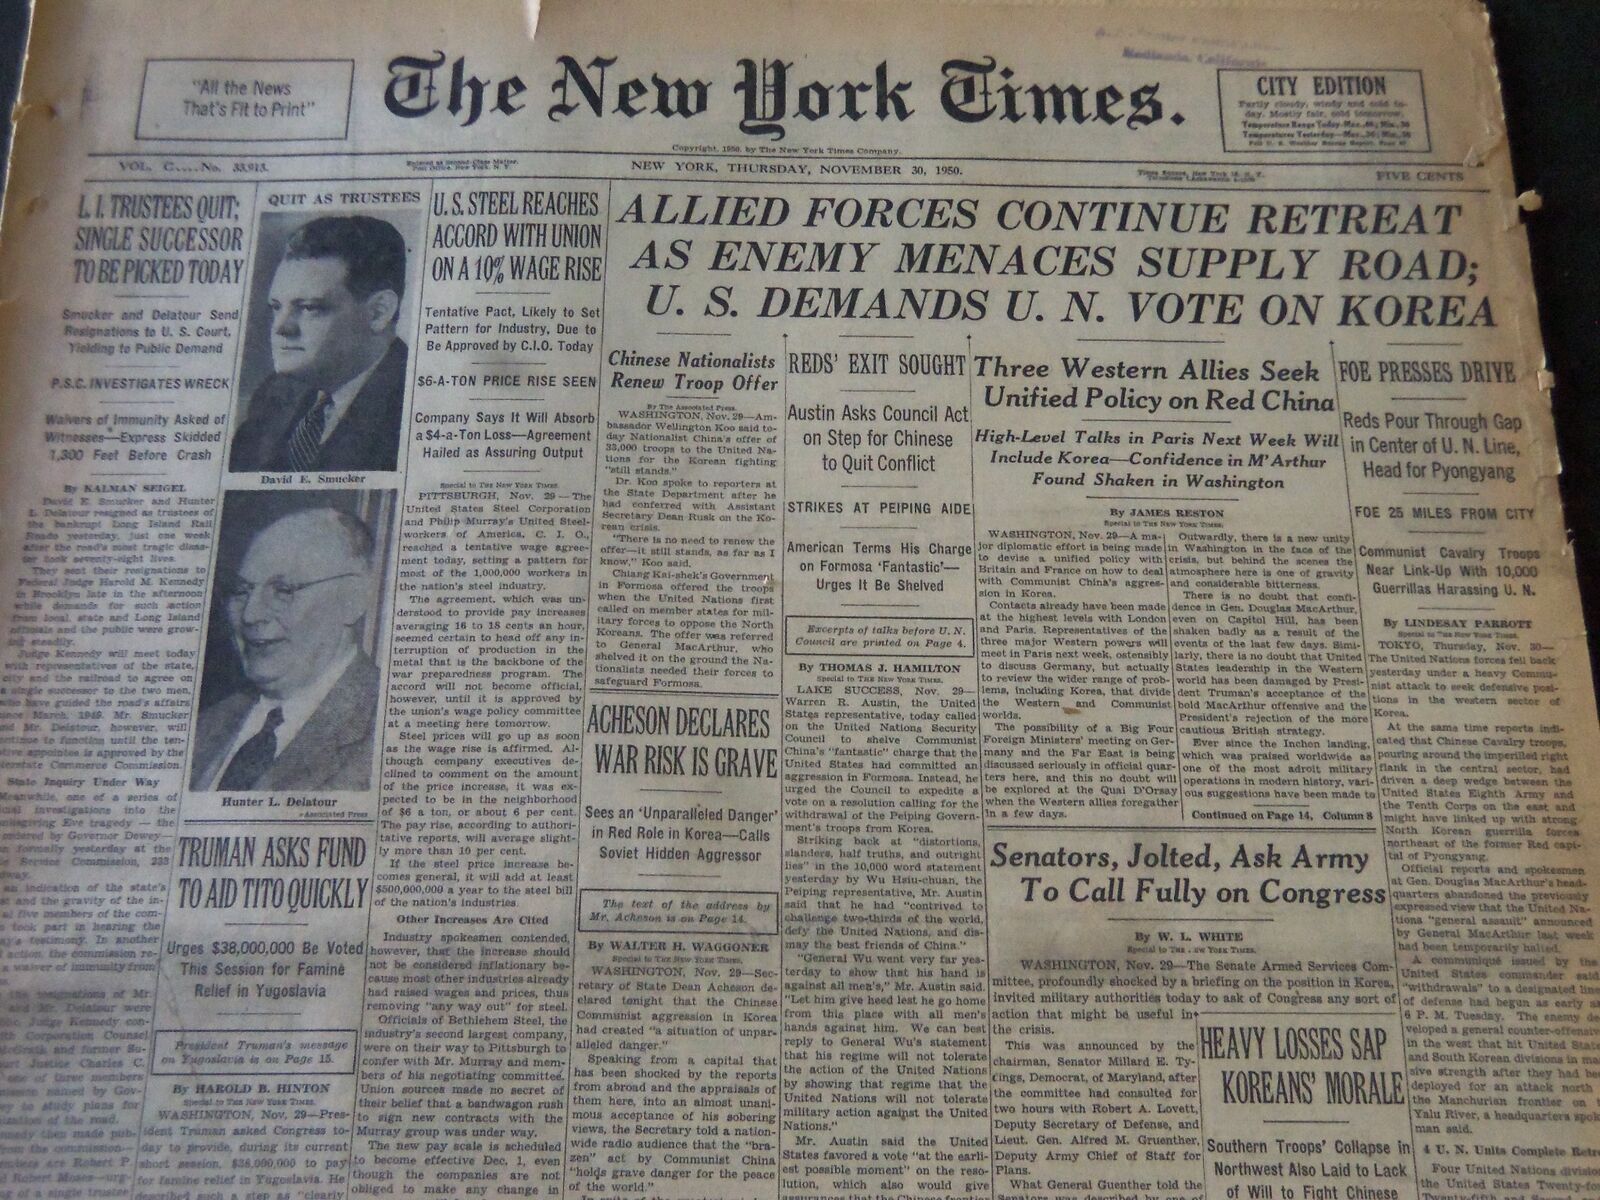 1950 NOVEMBER 30 NEW YORK TIMES - U. S. DEMANDS U. N. VOTE TO KOREA - NT 5976